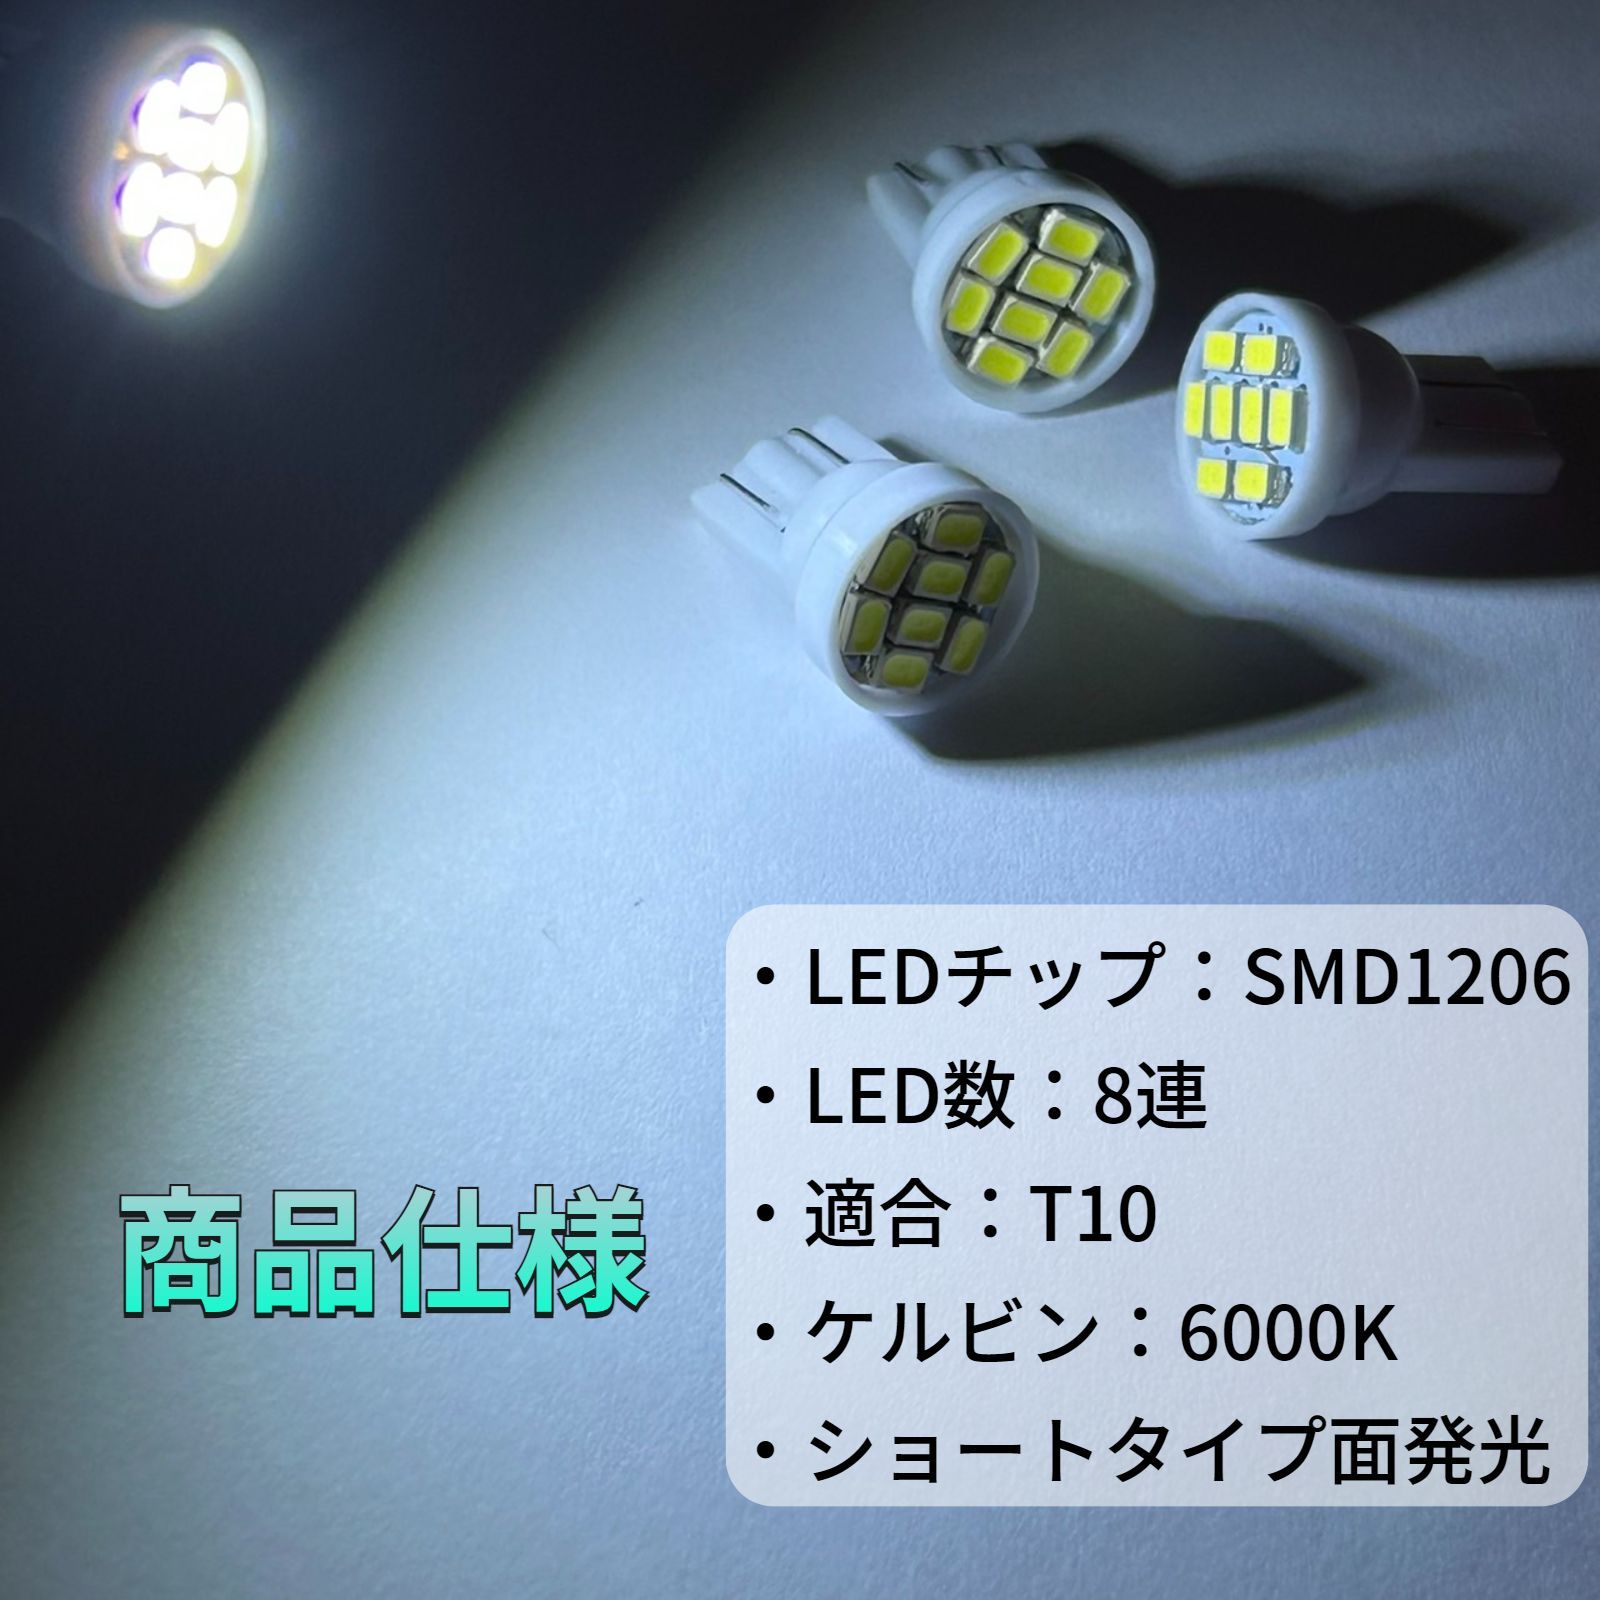 明るい！ゼファー1100 ZEPHYR1100 メーター用LED球 インジケーターランプセット ホワイト 白 カワサキ kawasaki カスタム  パーツ 車検対応